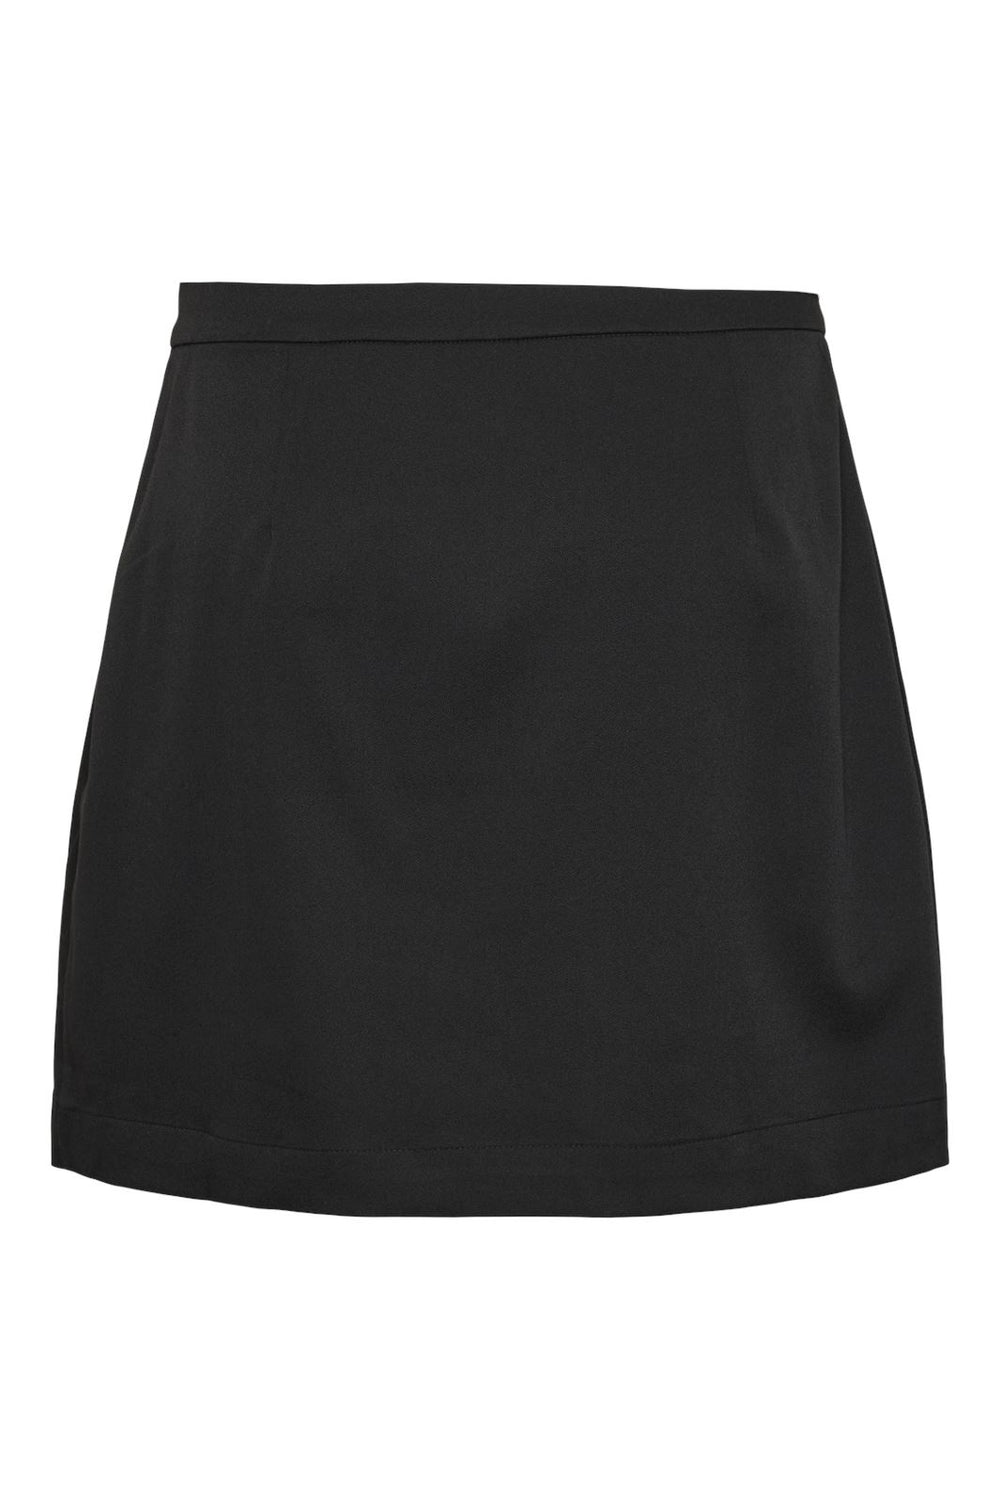 Pieces - Pctaylor Short Skirt - 4623630 Black